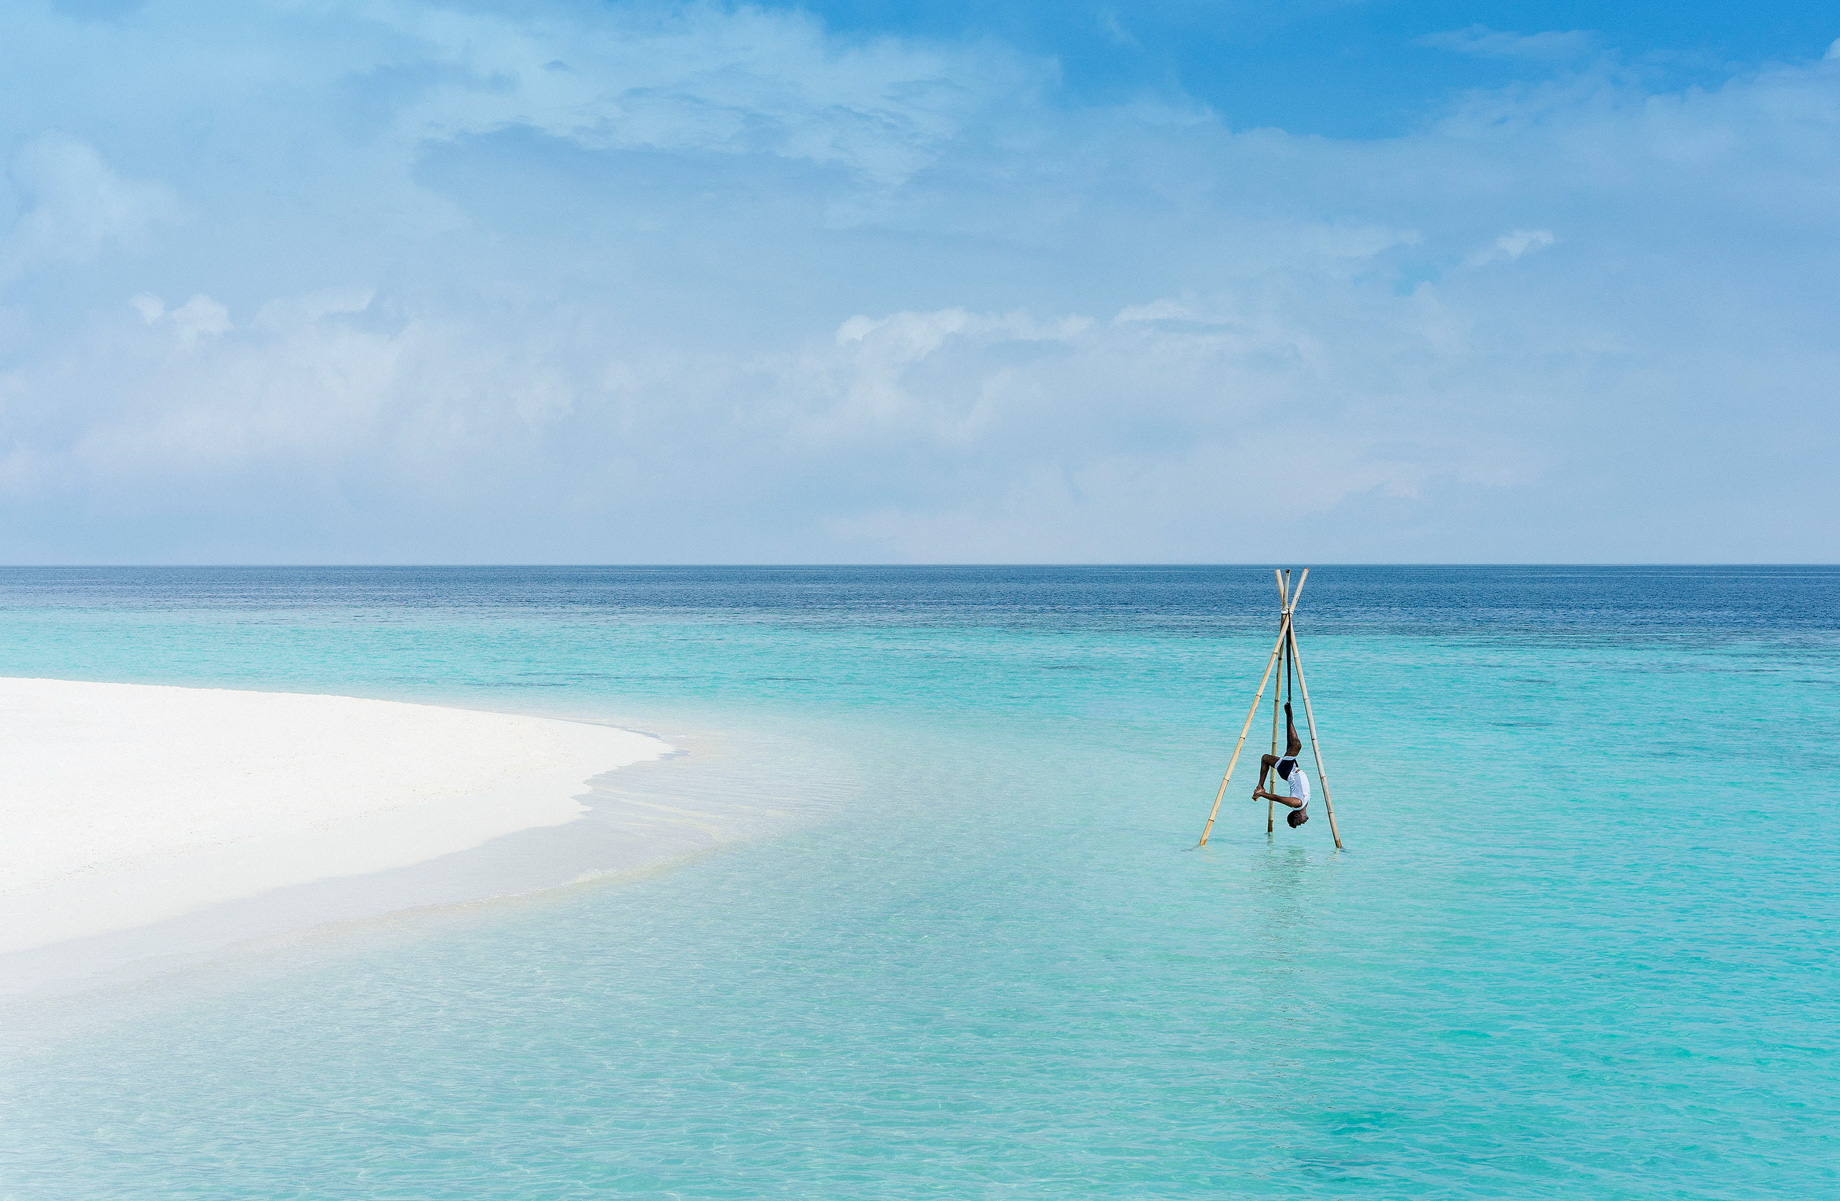 Anantara Kihavah Maldives Villas Resort – Baa Atoll, Maldives – Overwater Yoga